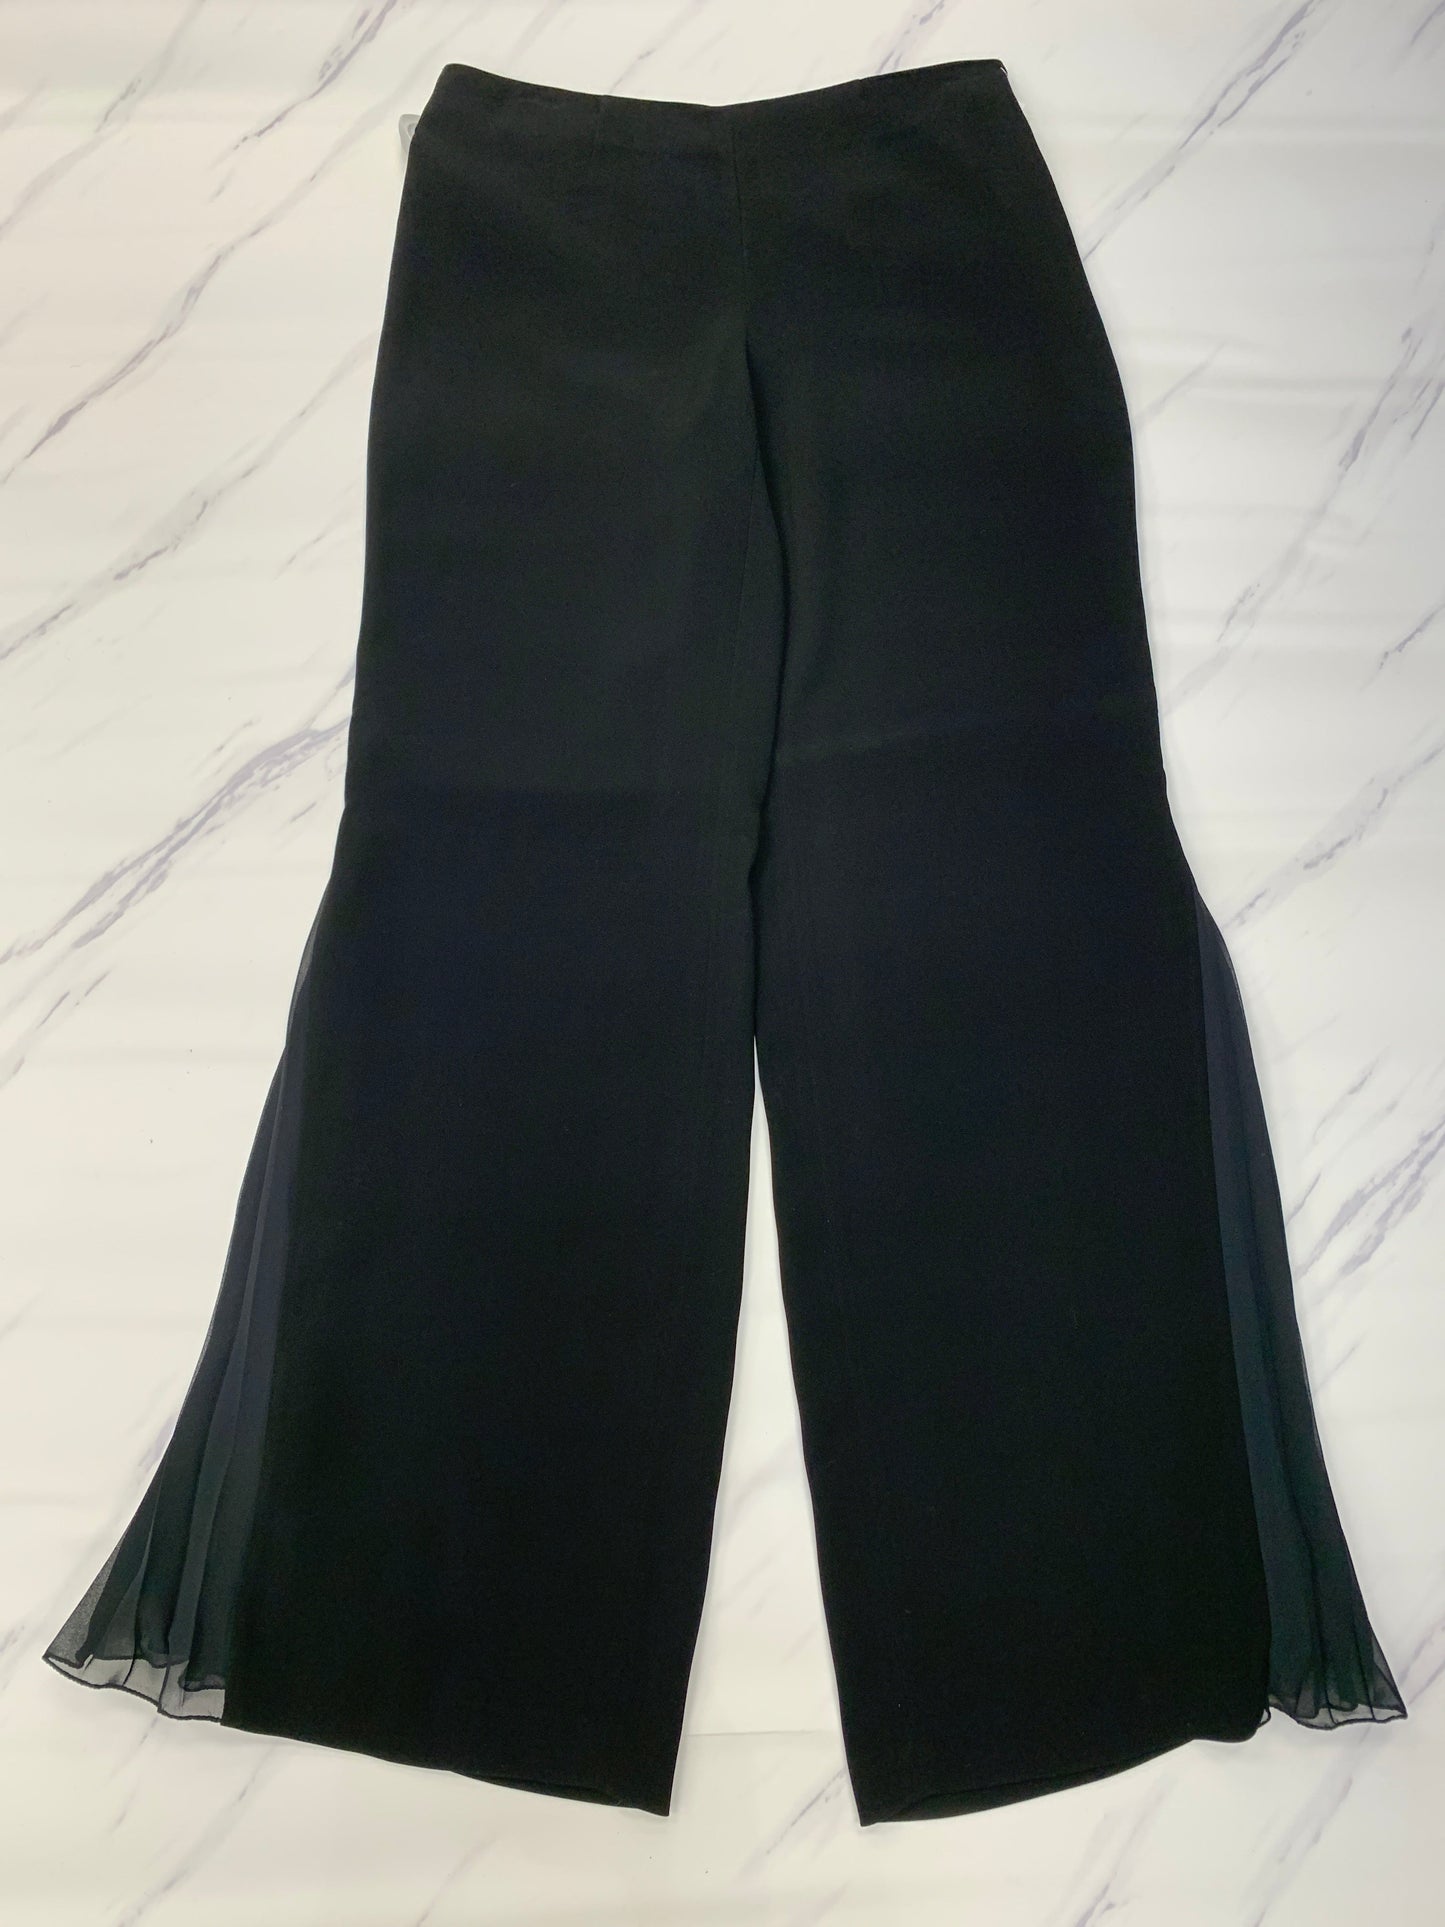 Black Pants Designer Cmb, Size 12